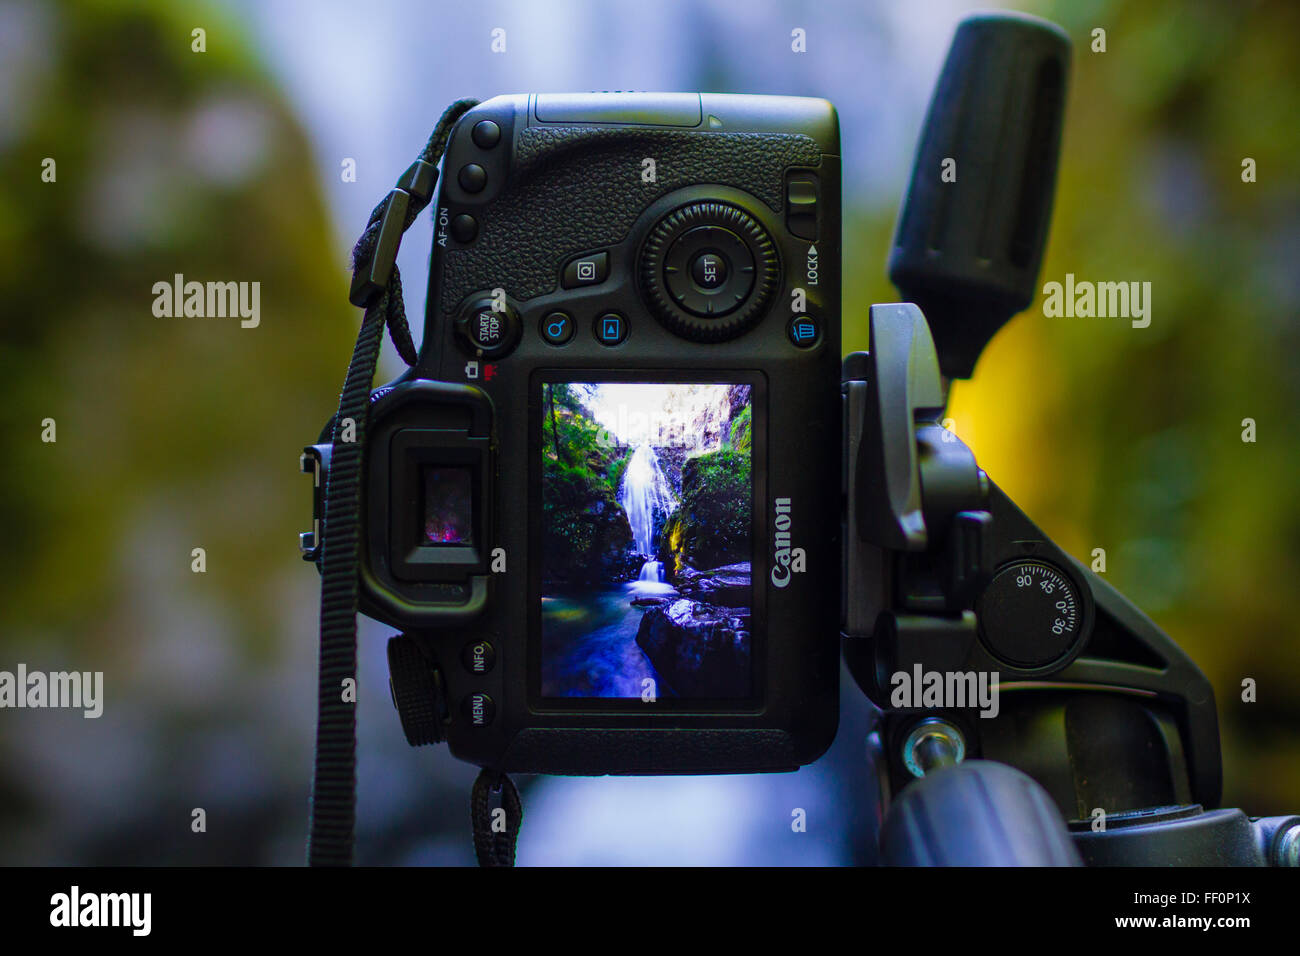 GLEITEN, OR - 7. Juni 2015: Canon EOS 6D DSLR Digitalkamera auf einem Stativ mit einem Bild von einem Wasserfall auf dem LCD-Bildschirm montiert. Stockfoto